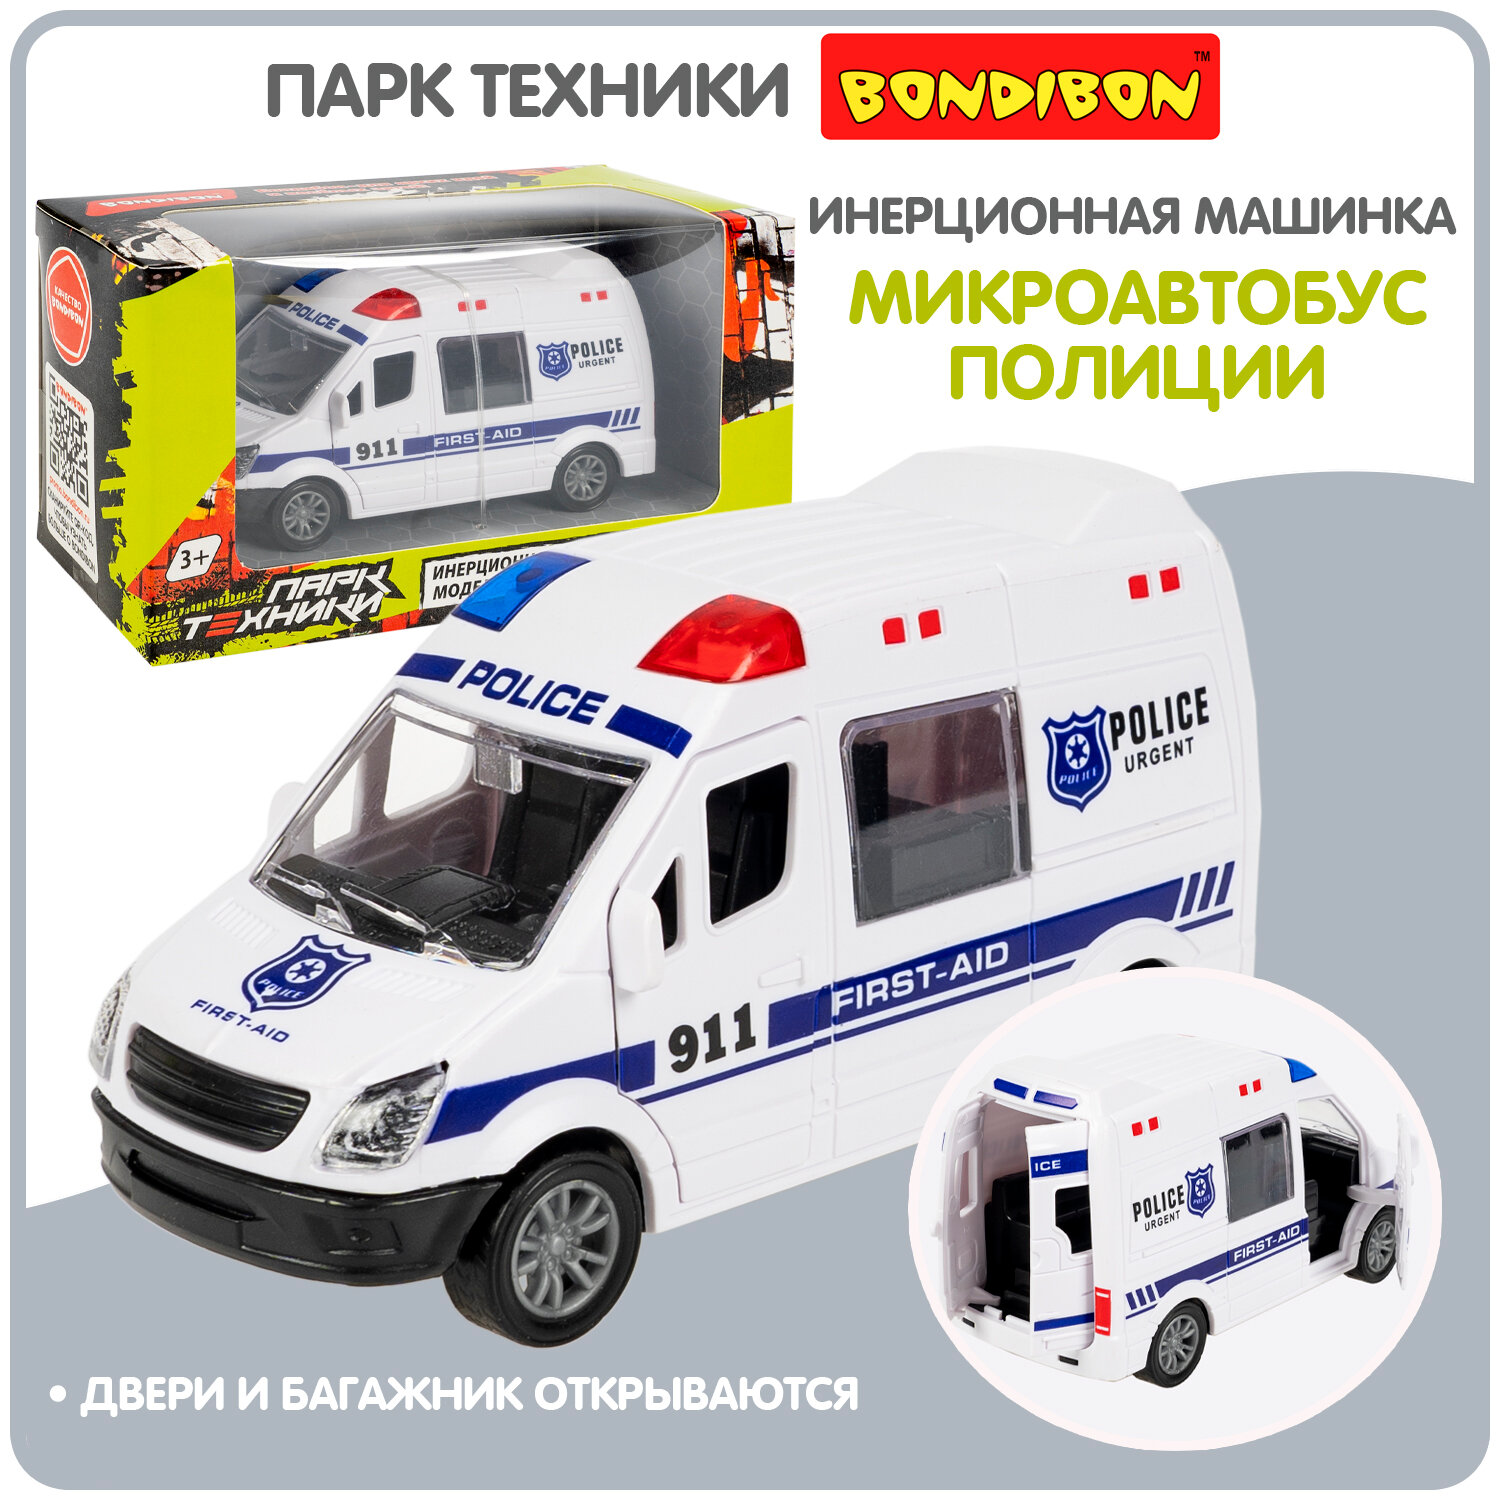 Полицейская машинка для мальчиков микроавтобус Bondibon "Парк техники" инерционная детская игрушка спецслужба полиция